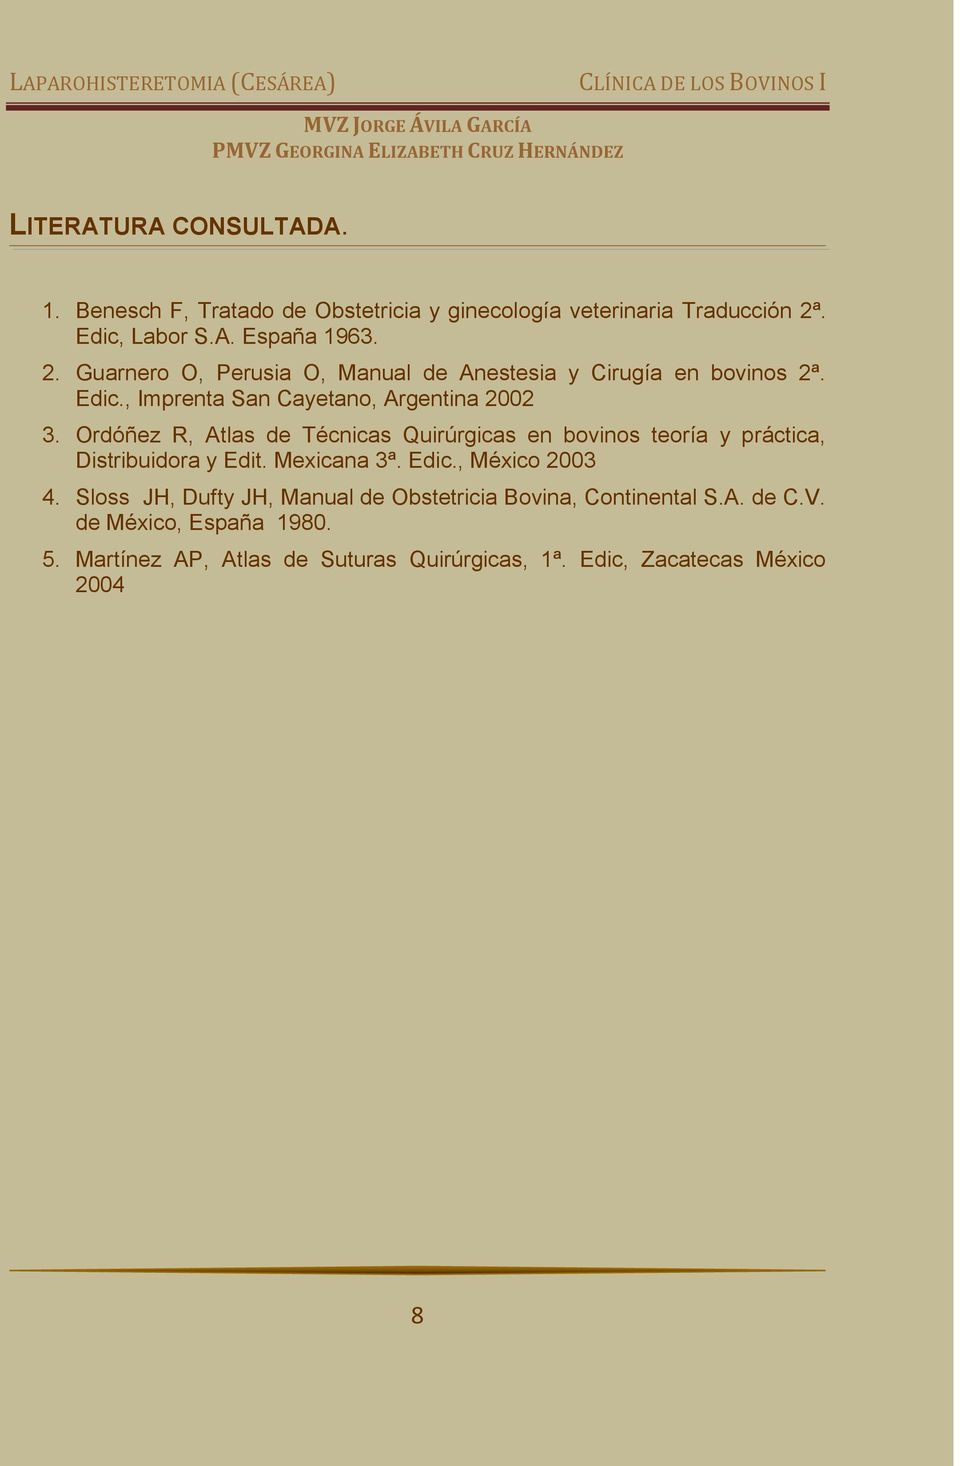 Ordóñez R, Atlas de Técnicas Quirúrgicas en bovinos teoría y práctica, Distribuidora y Edit. Mexicana 3ª. Edic., México 2003 4.